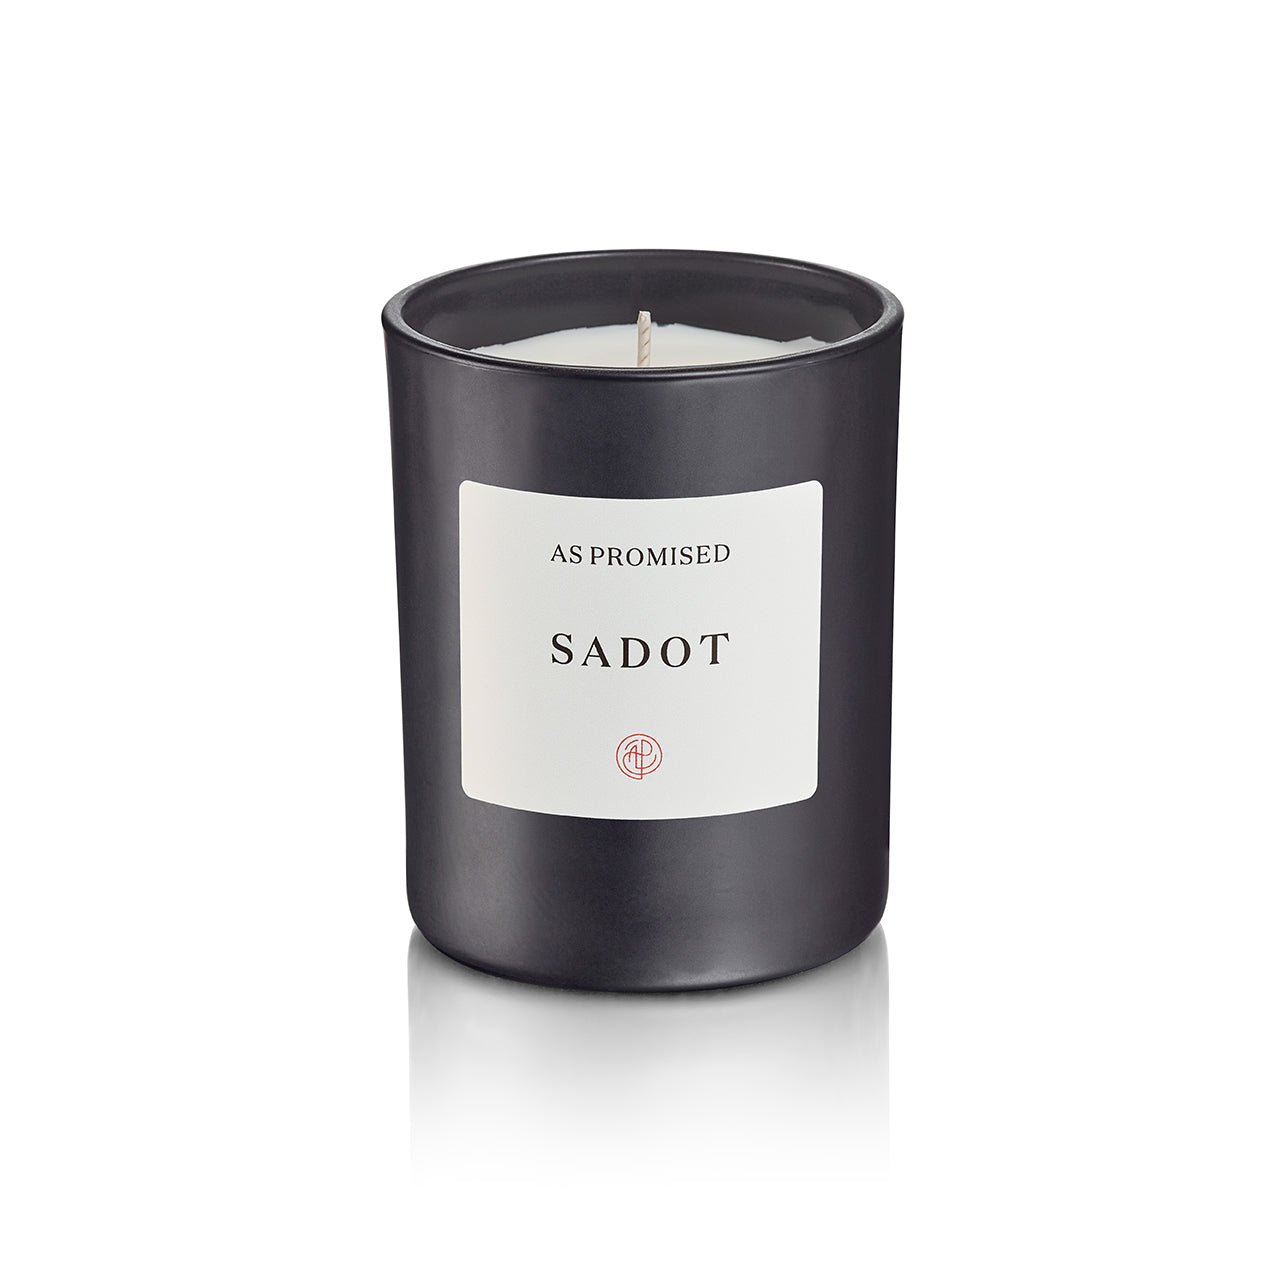 Sadot Candle - Medium